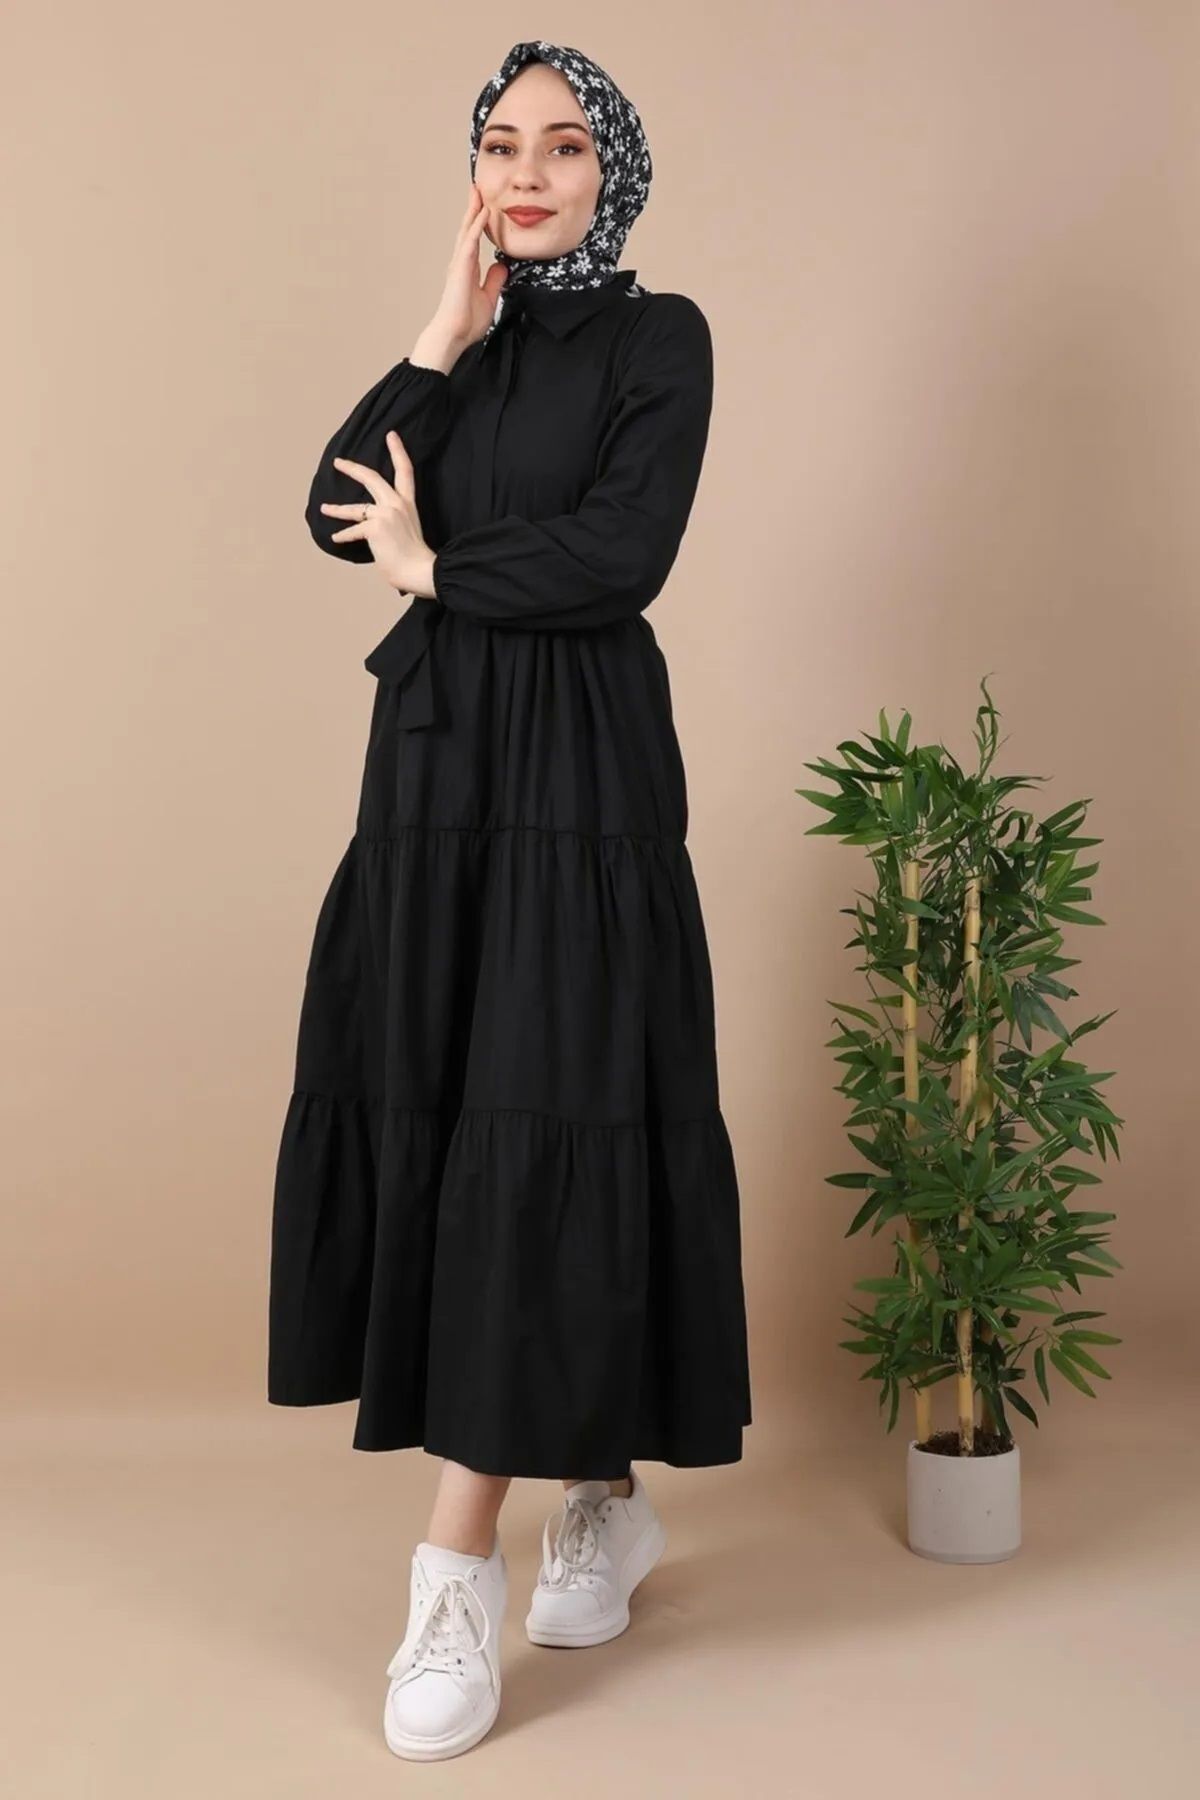 NETCLASS Standart Yaka Düğmeli Kuşaklı Siyah Elbise